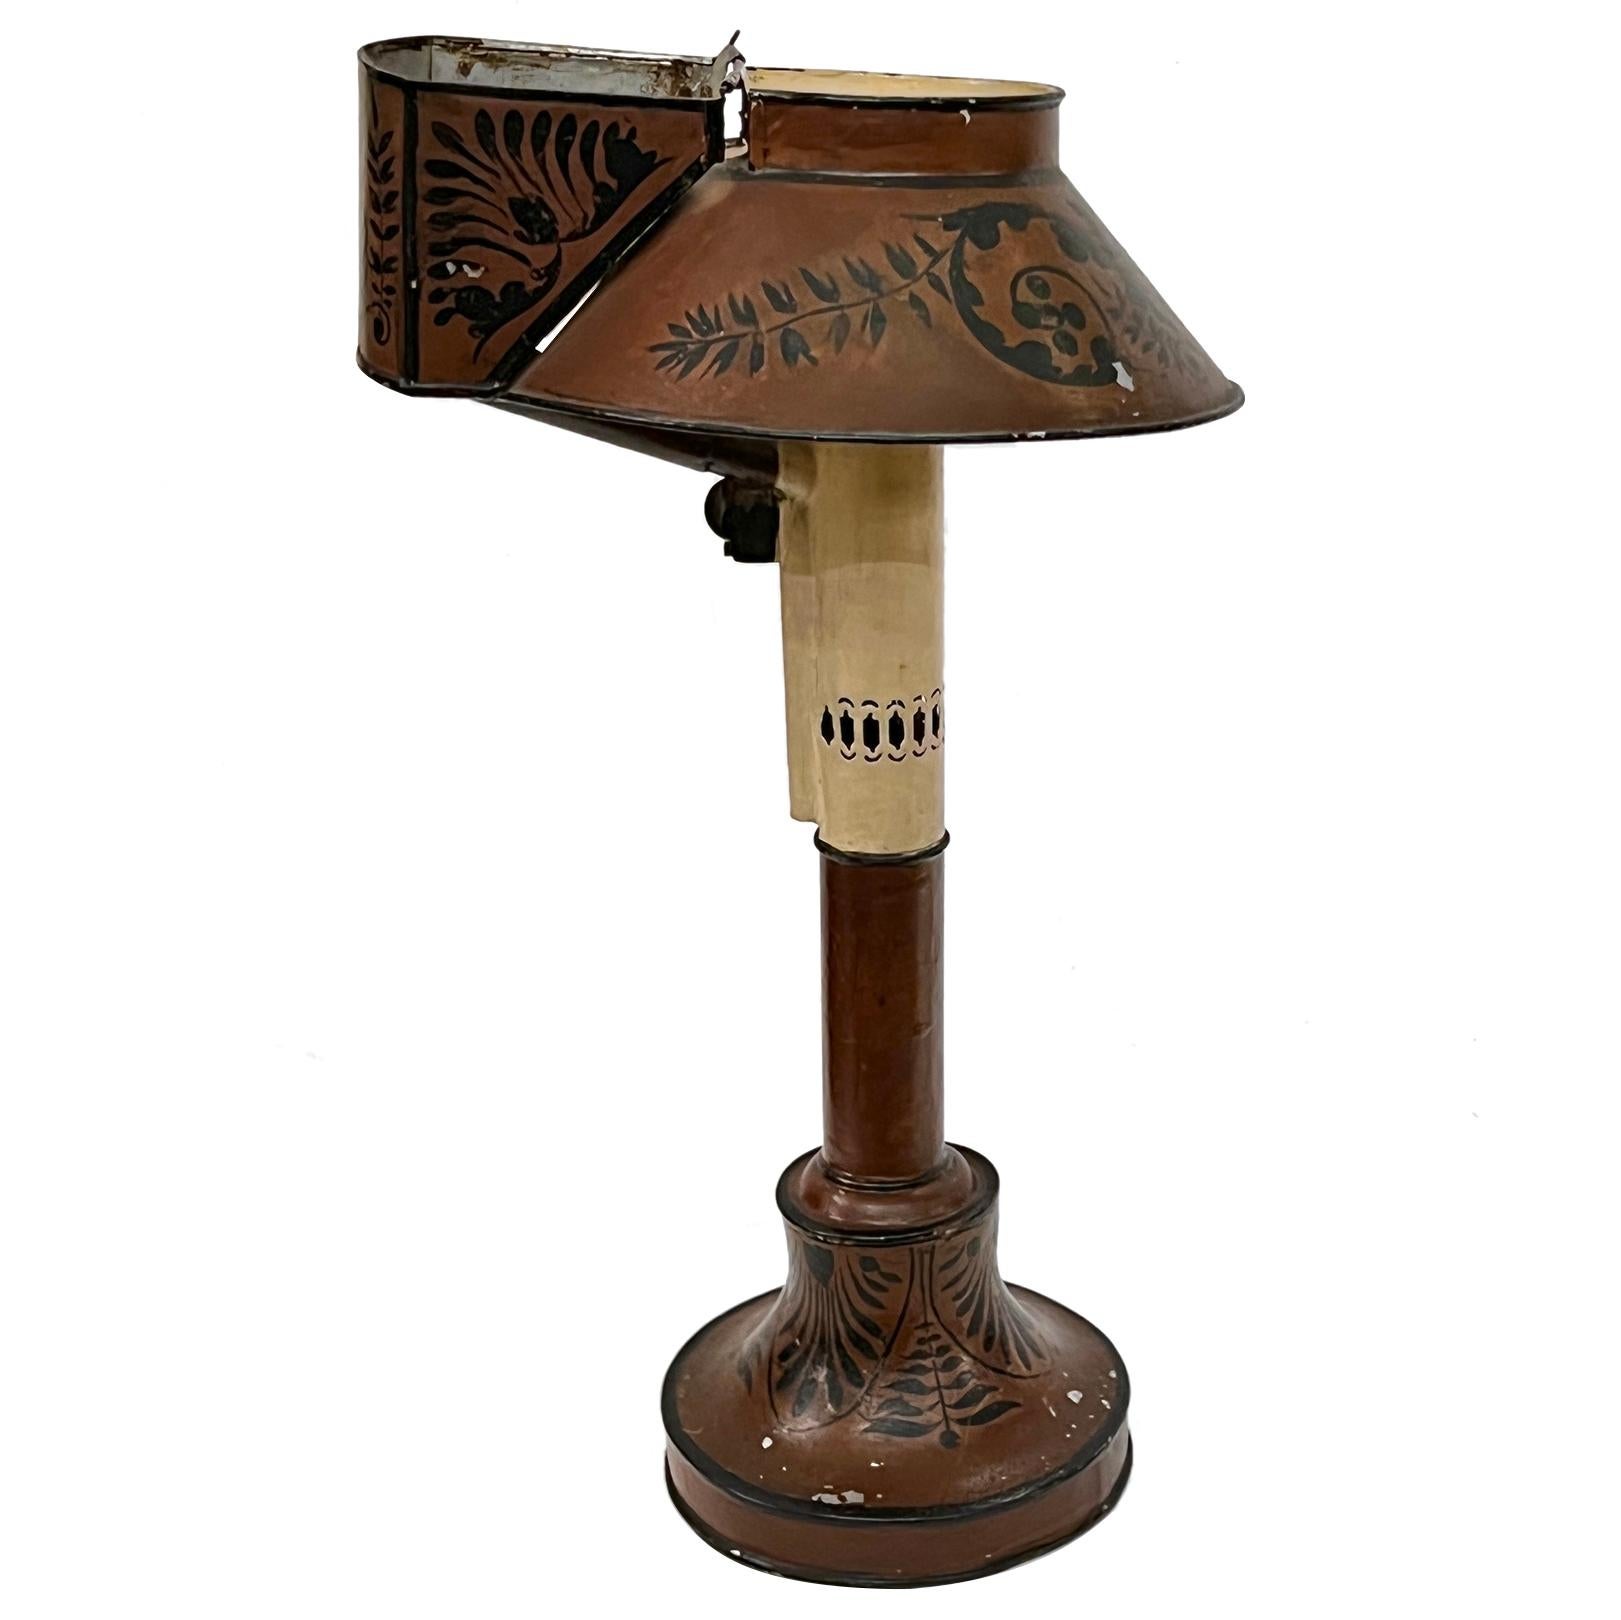 Lampe à huile française du 19e siècle environ, avec finition peinte d'origine et câblée pour une utilisation électrique.

Mesures :
Hauteur : 14